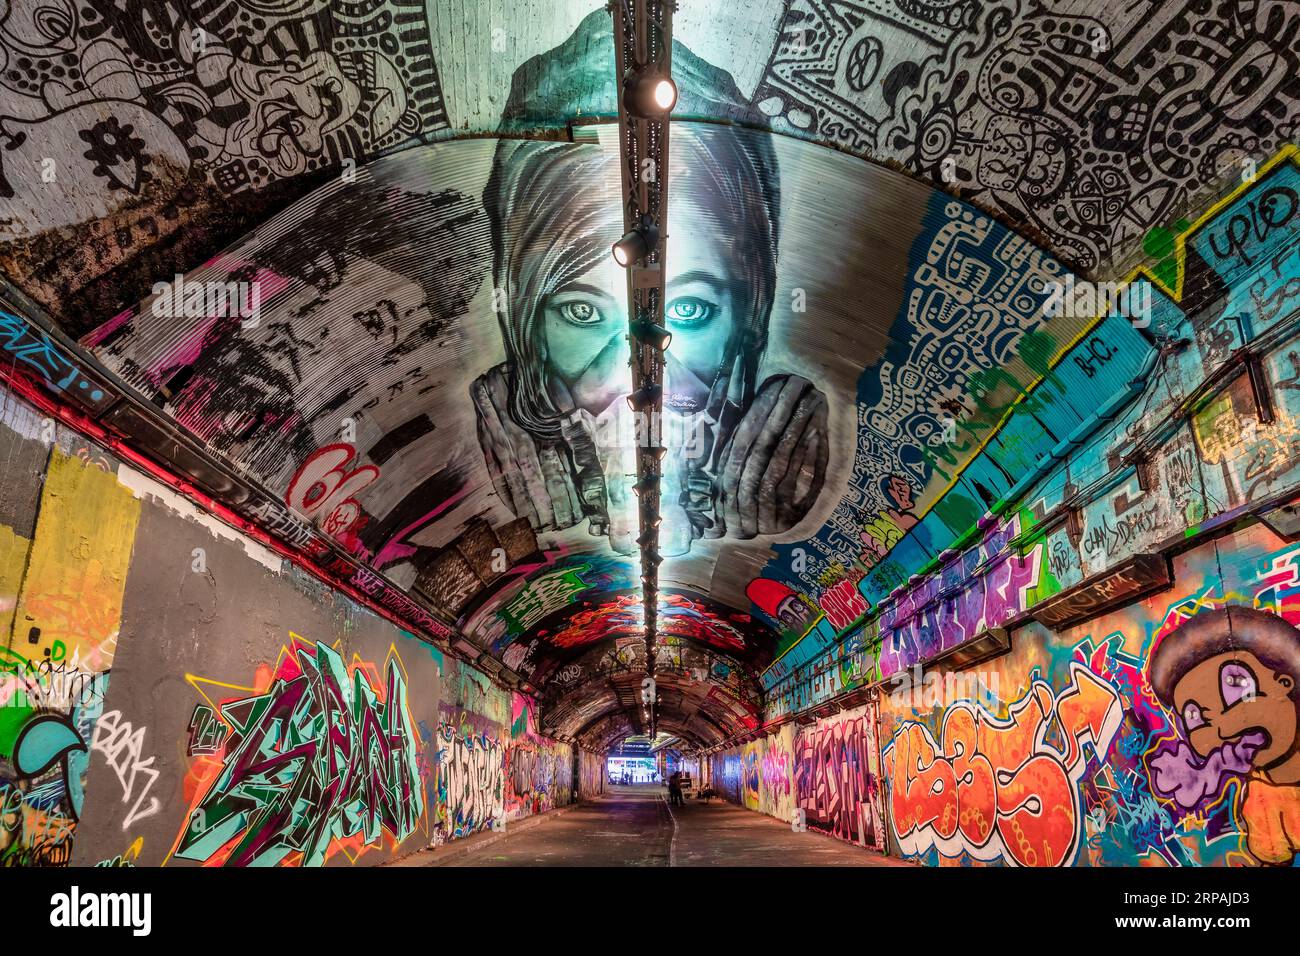 Leake Street, Graffiti Tunnel, Wall Art - London UK Stock Photo